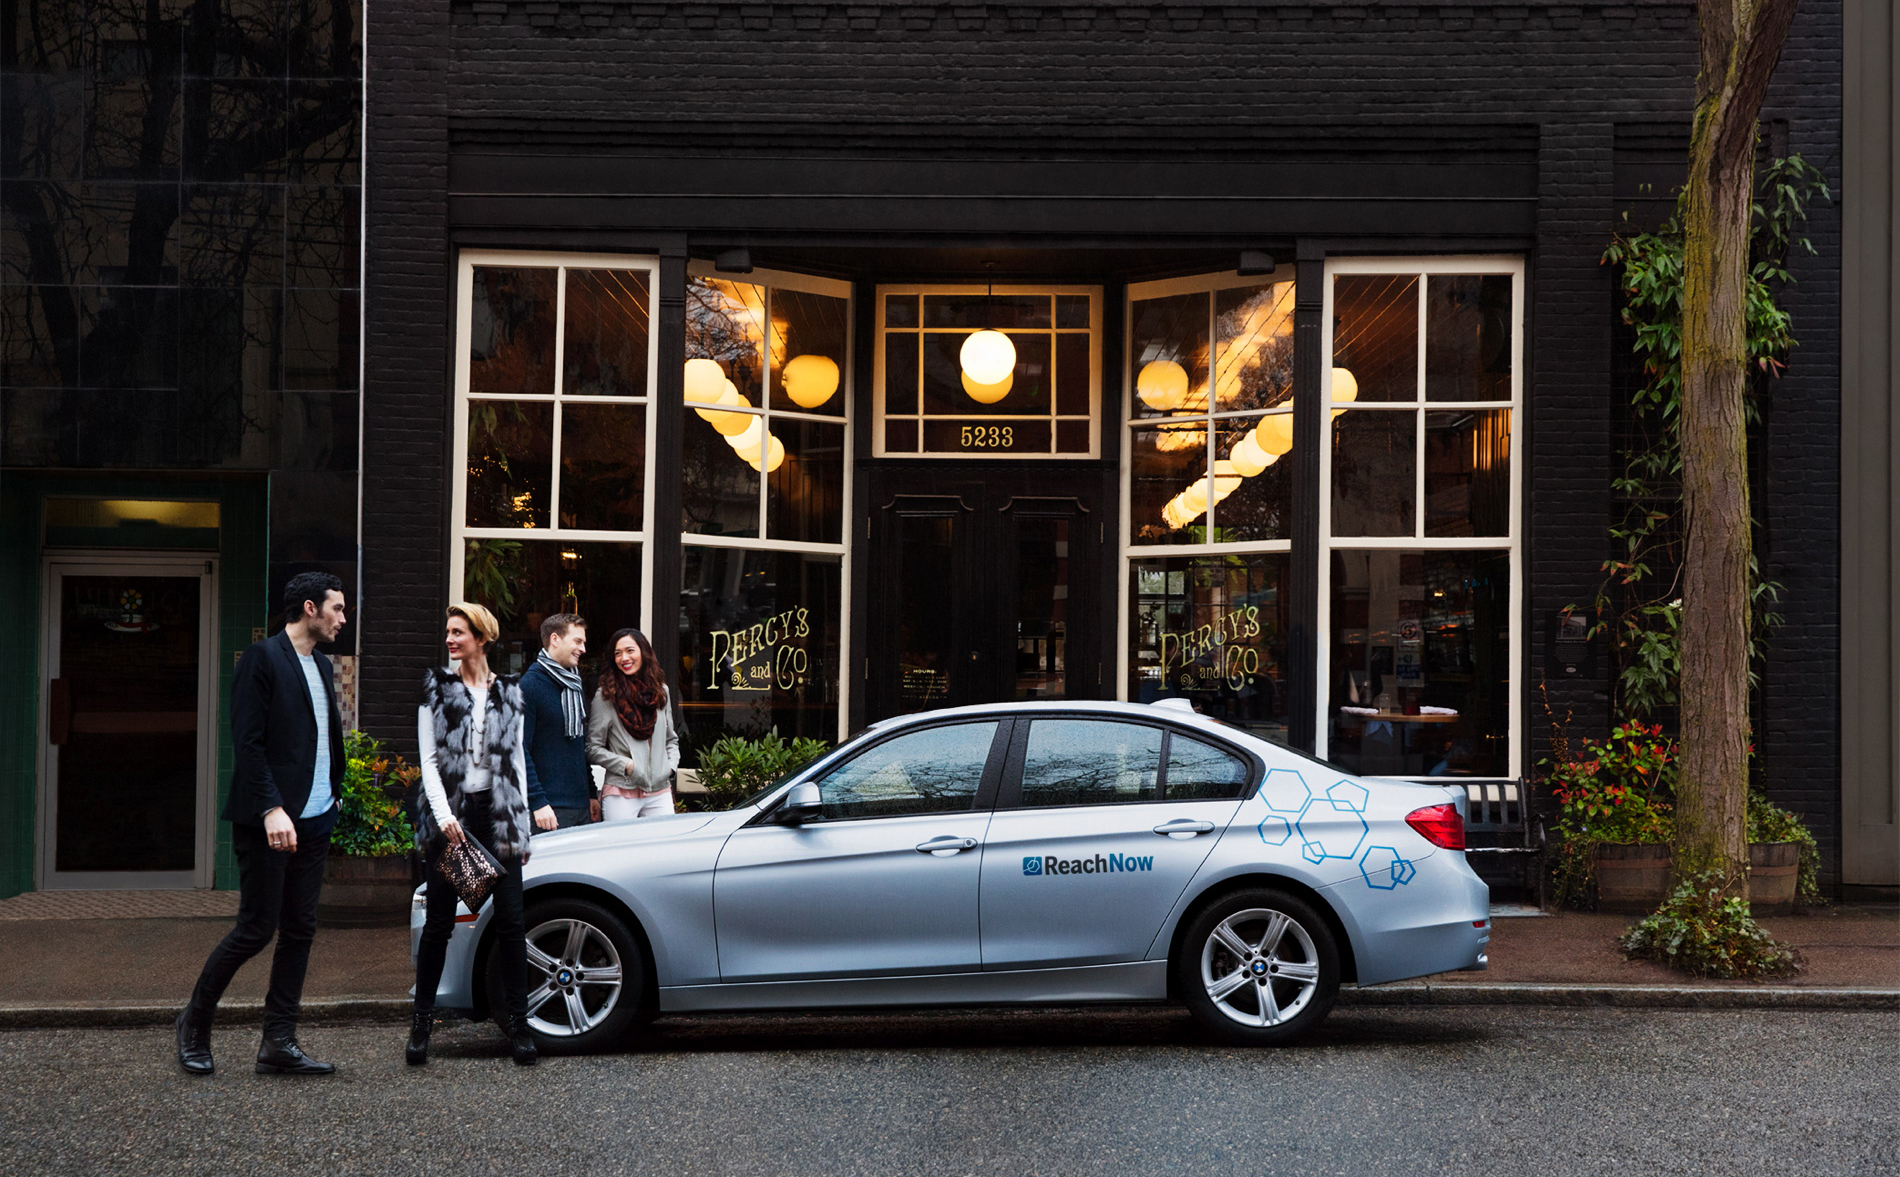 BMW giới thiệu dịch vụ gọi xe giống Uber tại một thành phố của Mỹ